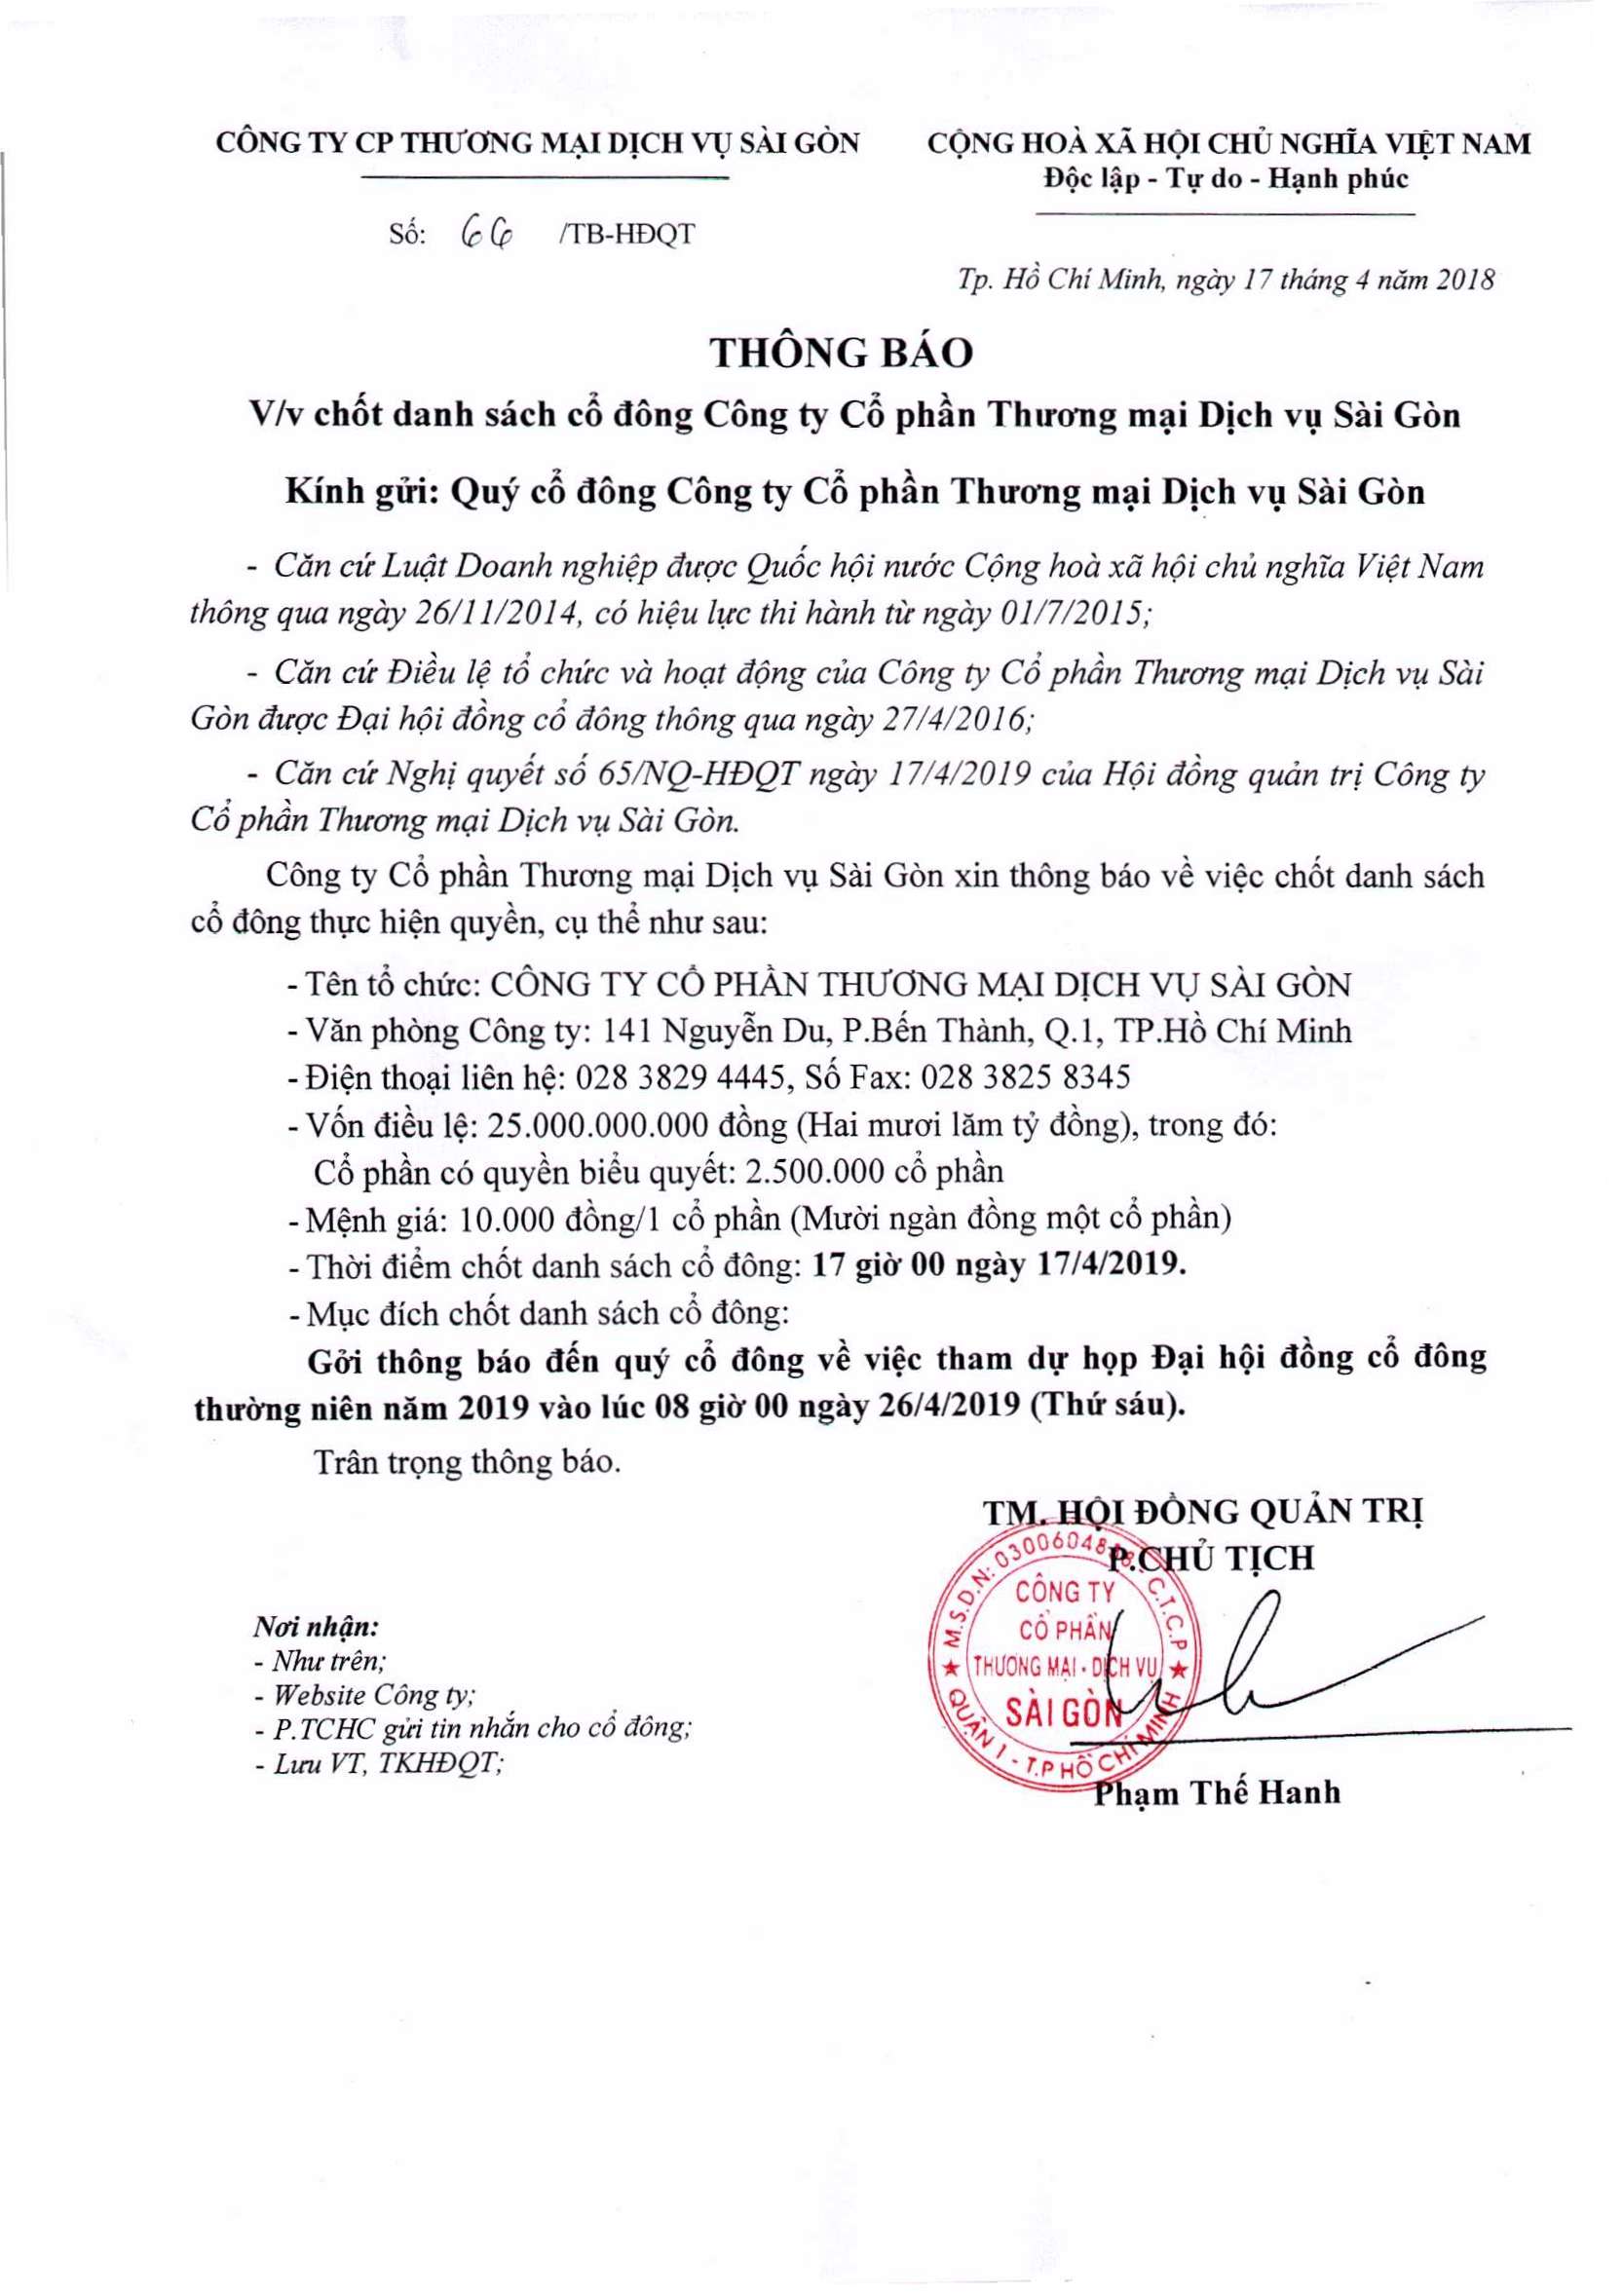 Thông báo chốt danh sách cổ đông Công ty CPTMDV Sài Gòn số 66 ngày 17-4-2019